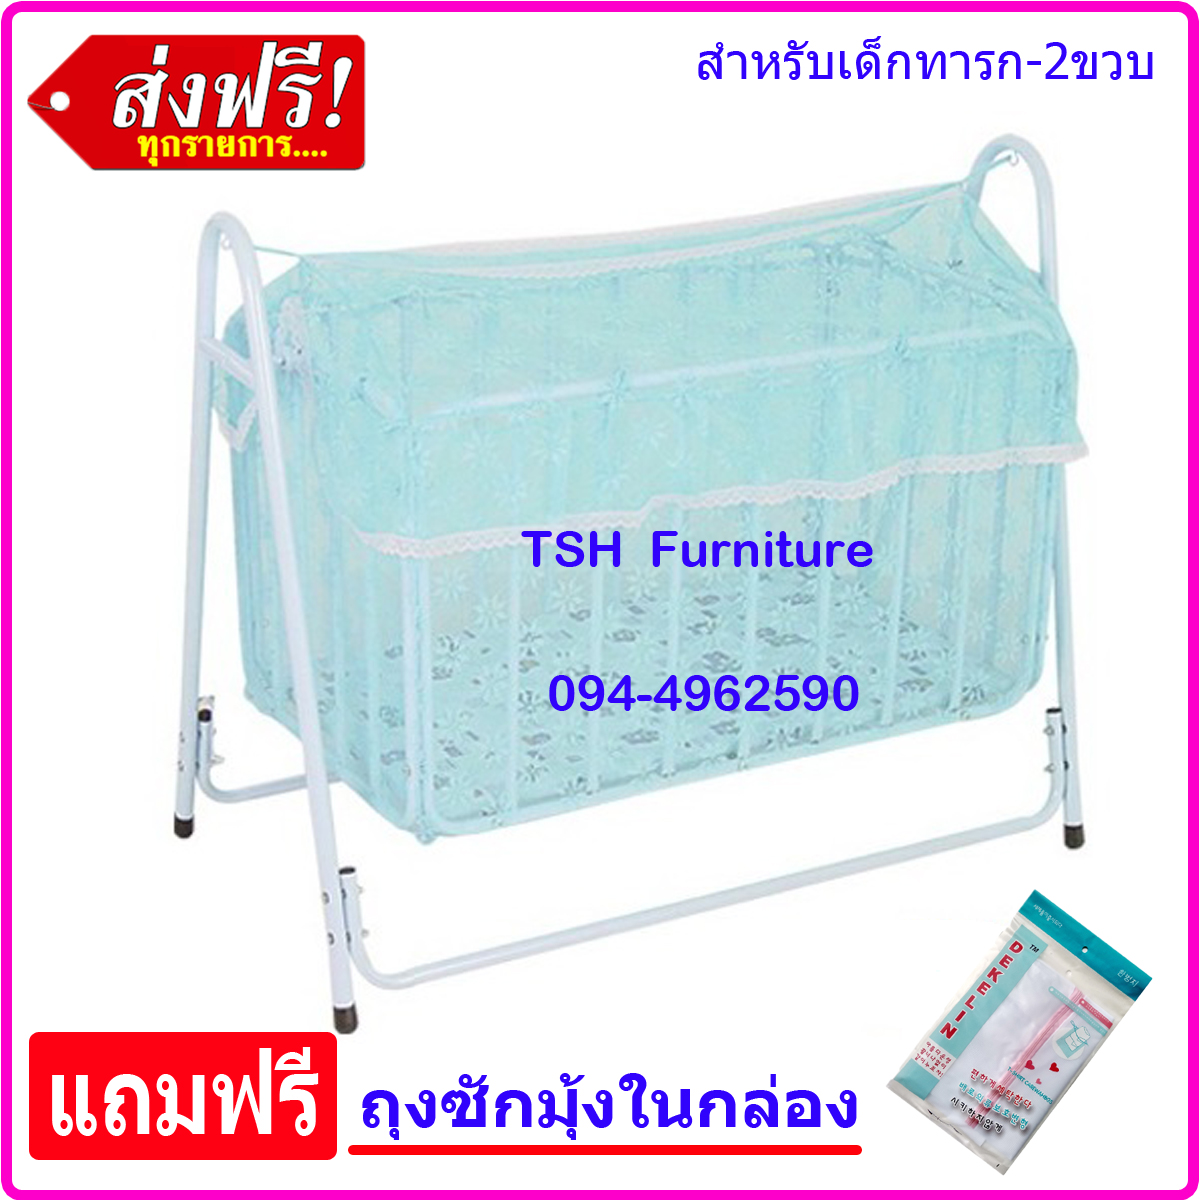 เปลลูกกรง NF พร้อมถุงซักมุ้ง มาตราฐานสูง Made in THAILAND เปลเด็ก เปลไกว เตียงเด็กอ่อน เปลเด็กอ่อน เปลลูกกรง เตียงเด็กอ่อน สำหรับทารก-2ขวบ